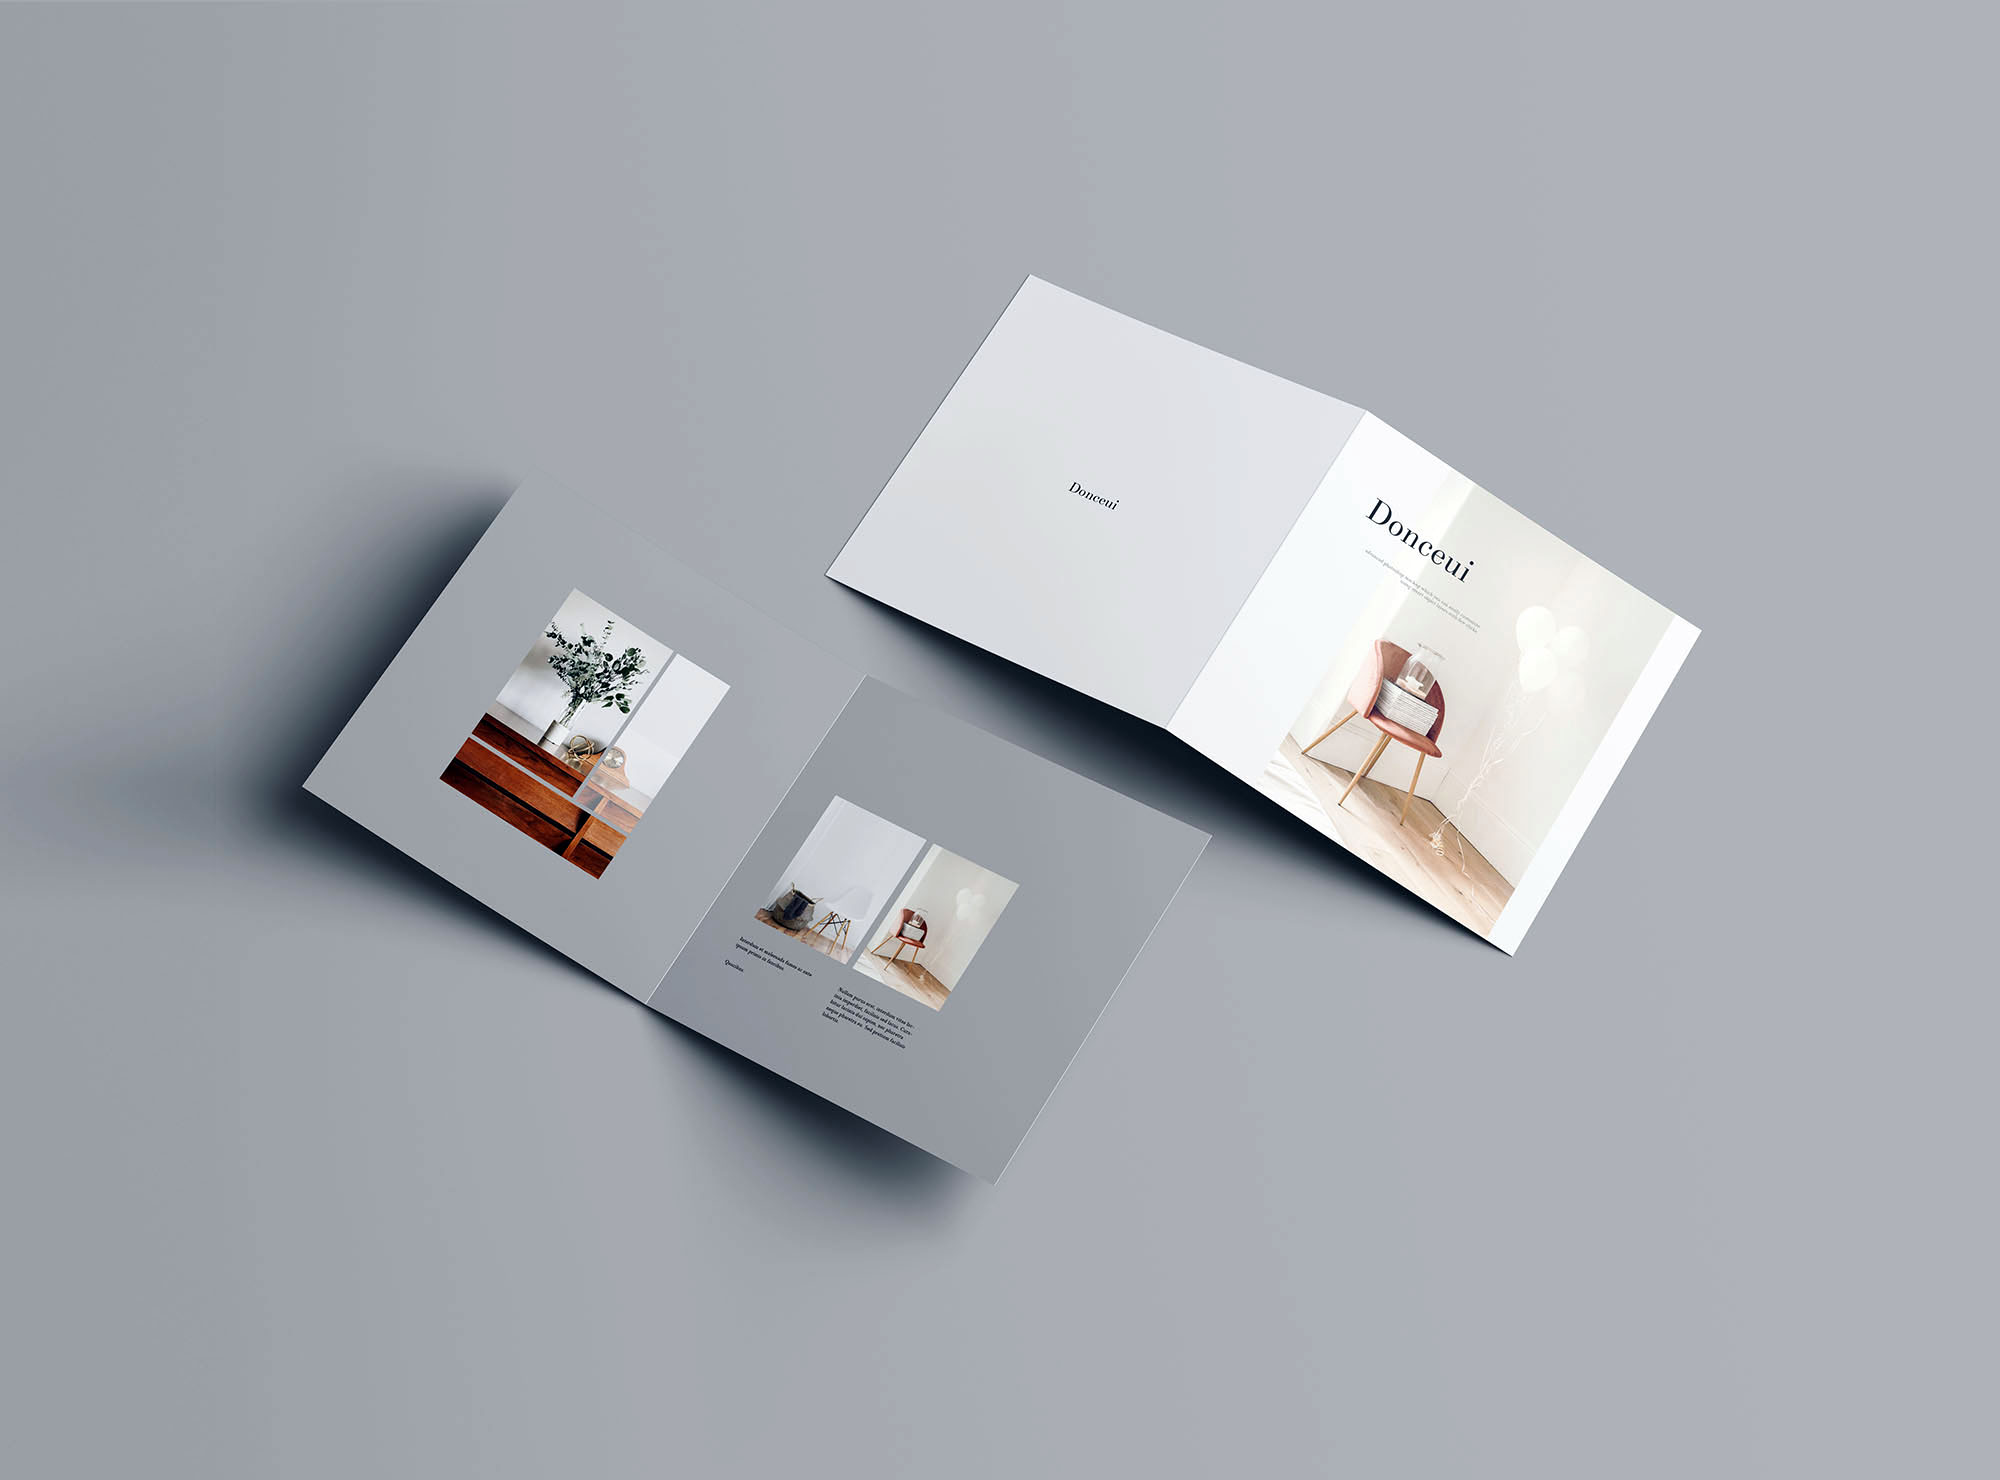 方形双折叠小册子封面&内页设计图样机第一素材精选 Square Bifold Brochure Mockup插图(7)